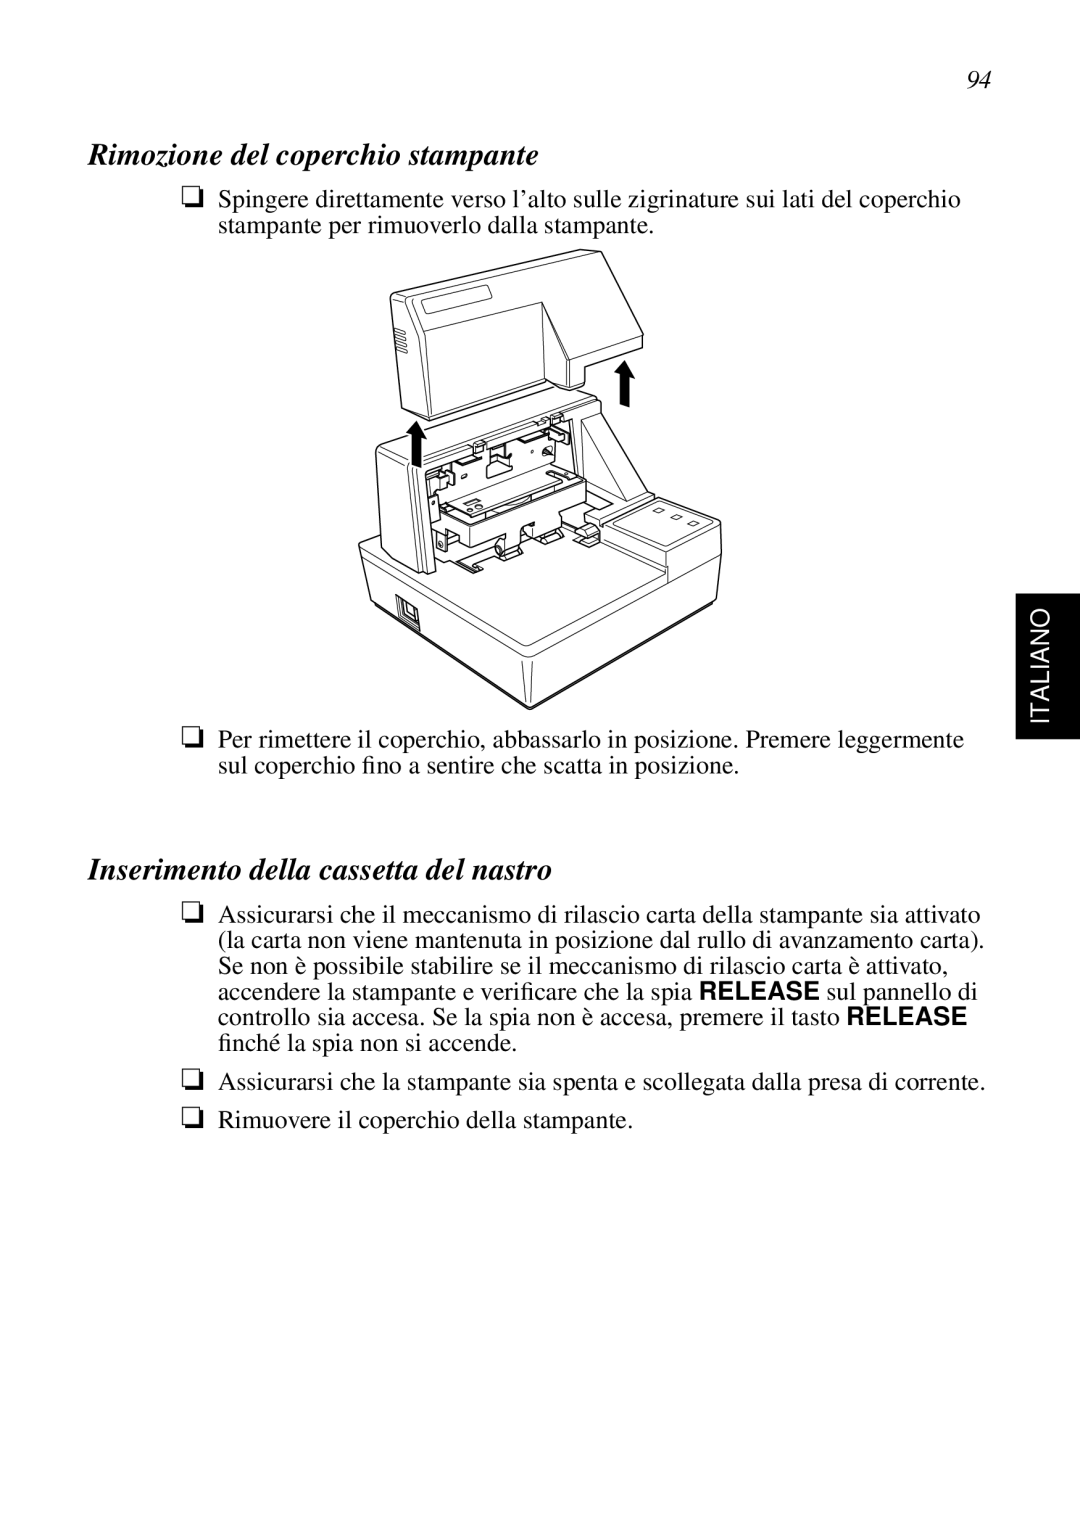 Star Micronics SP298 user manual Rimozione del coperchio stampante, Inserimento della cassetta del nastro, Italiano 